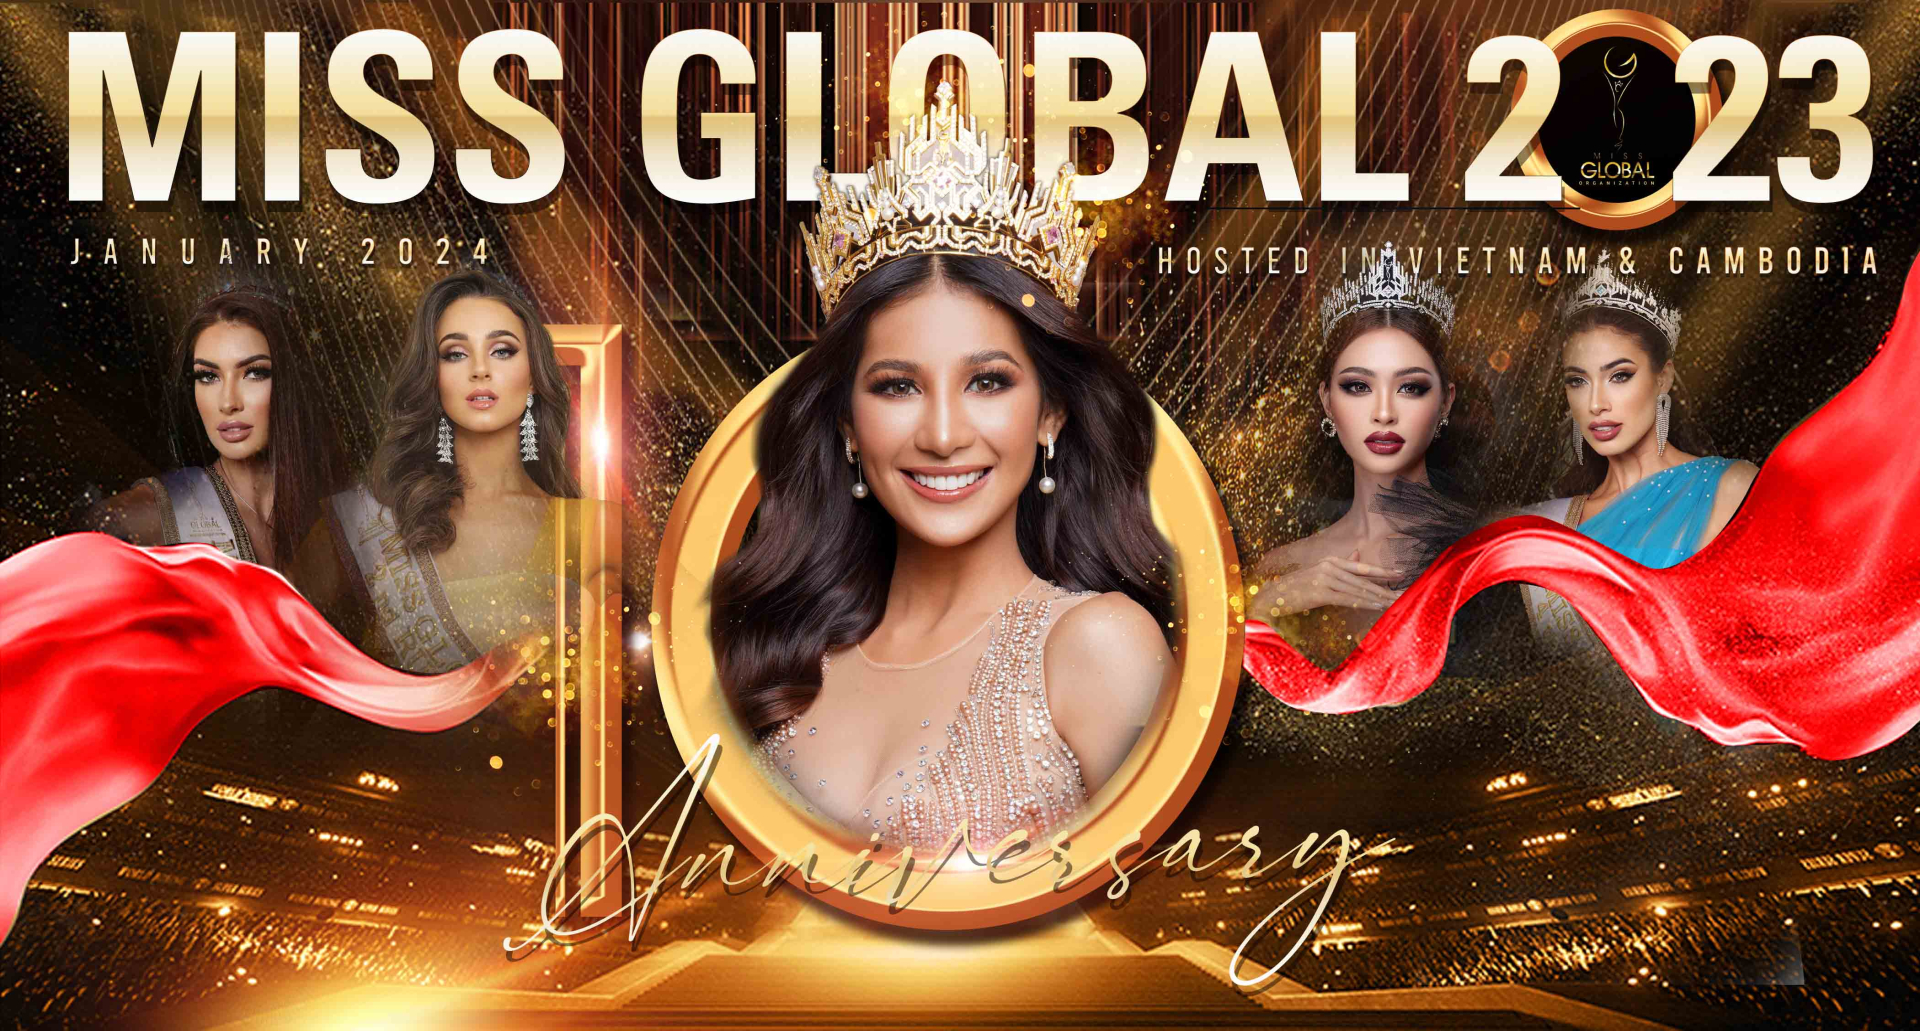 Dàn người đẹp Miss Global 2023 háo hức đến Việt Nam - ảnh 1